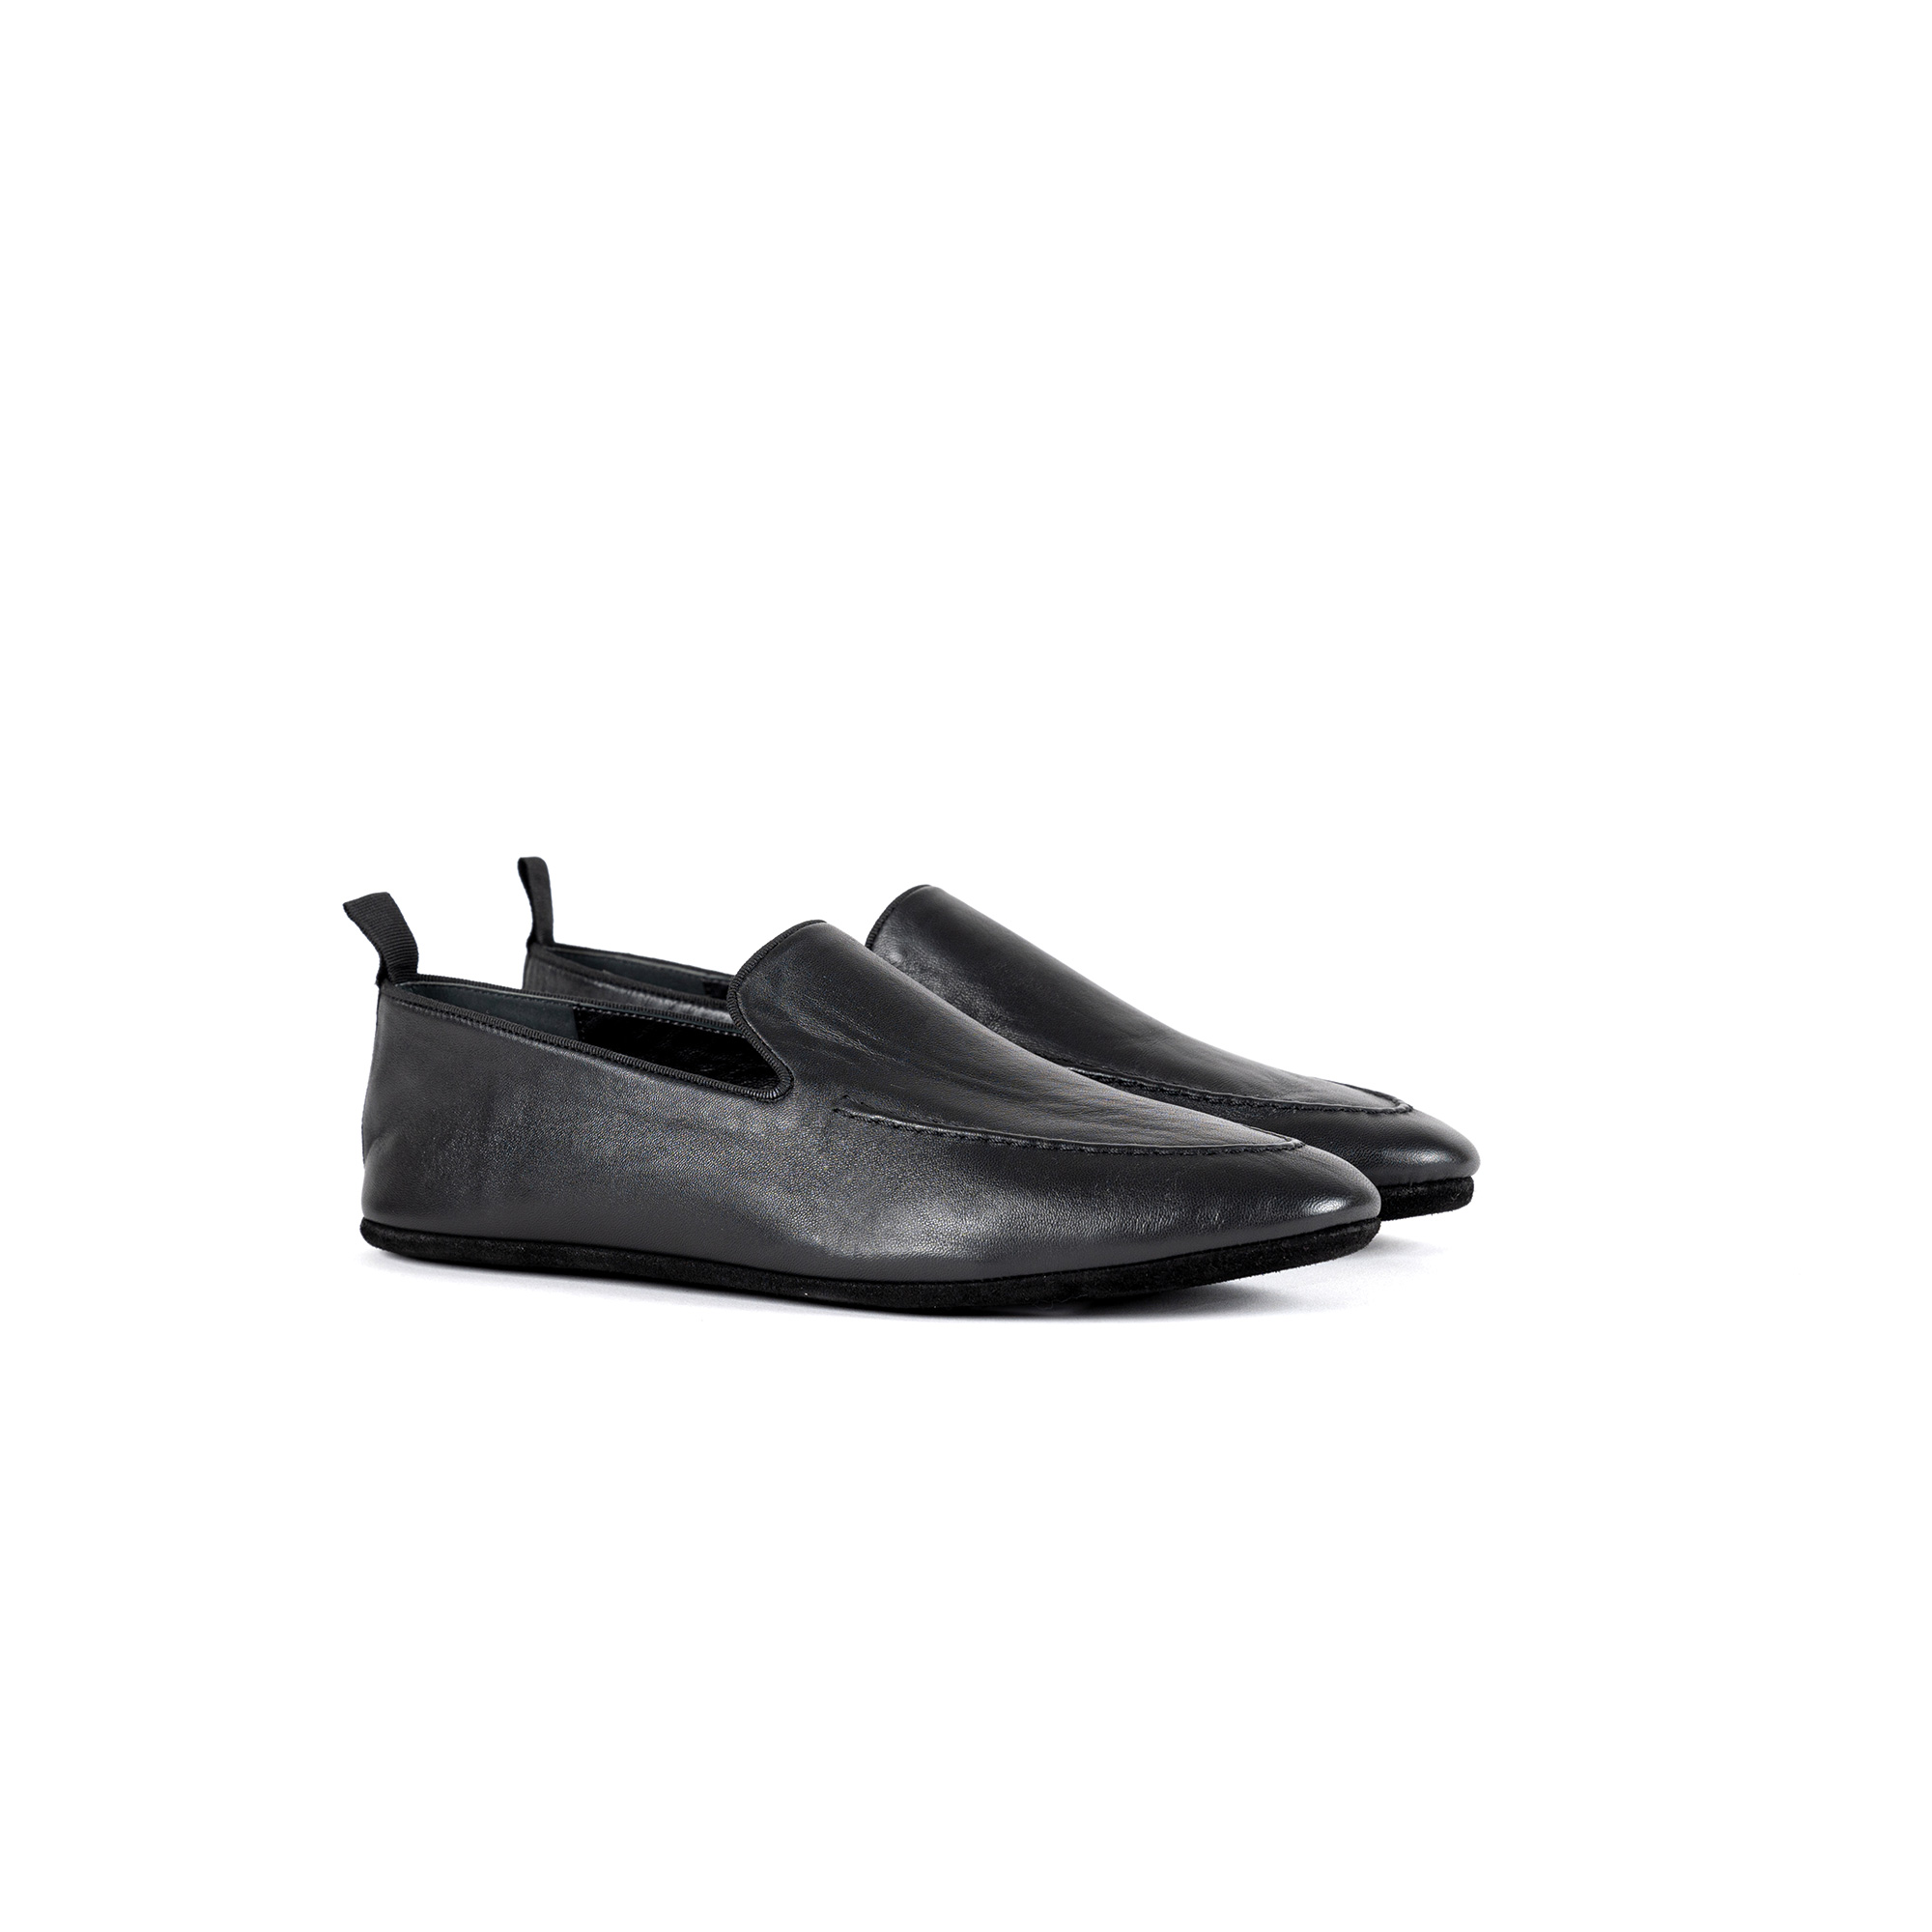 Pantofola interno classico in nappa - Farfalla italian slippers